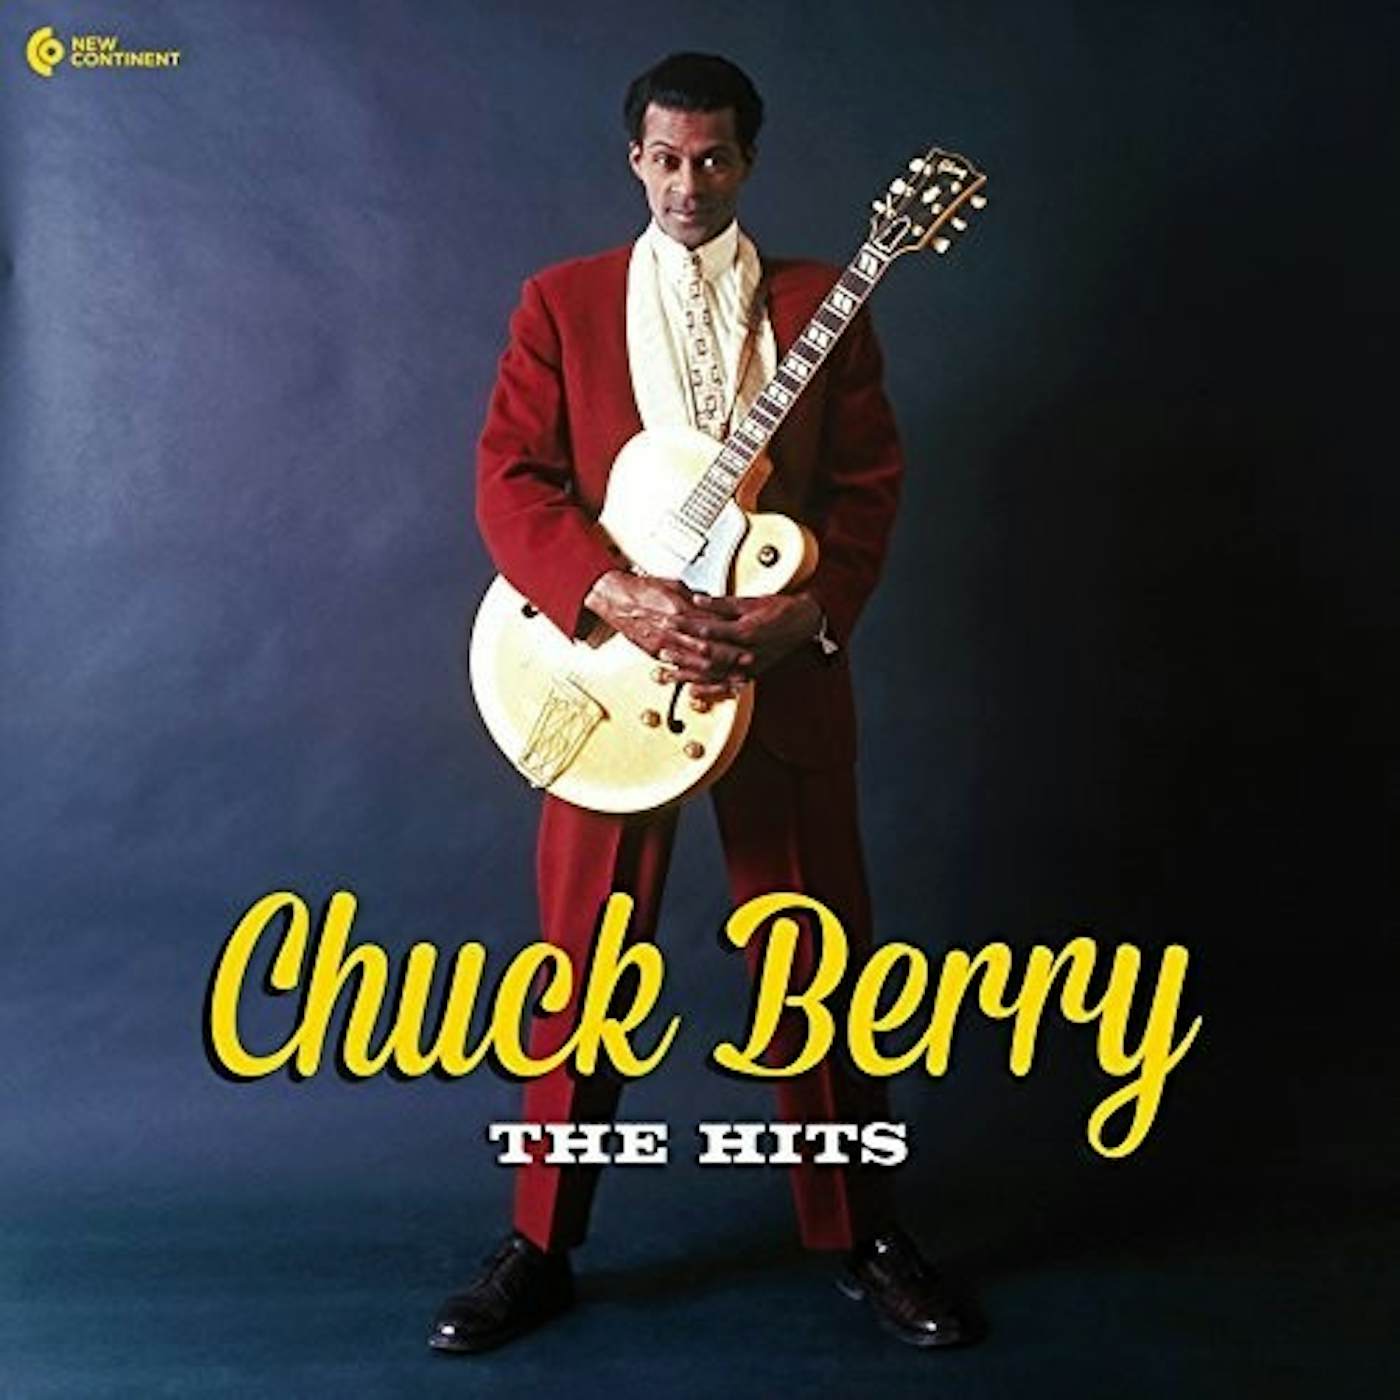 Chuck Berry HITS Vinyl Record